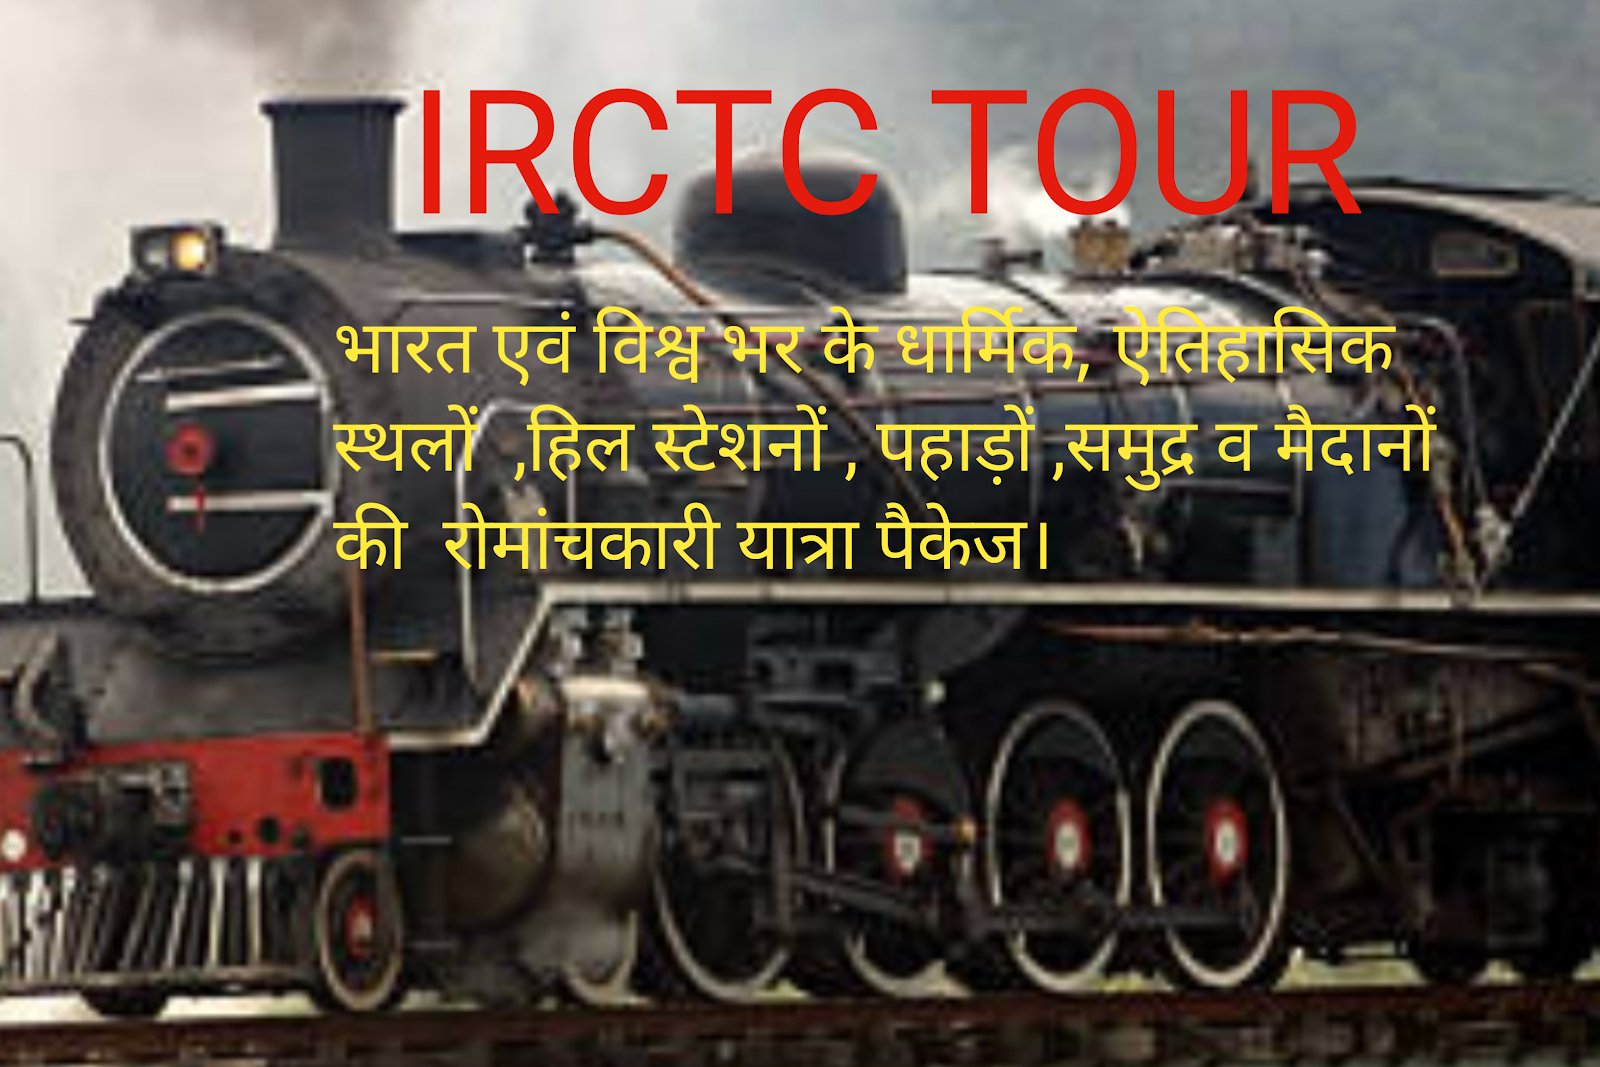 IRCTC TOUR